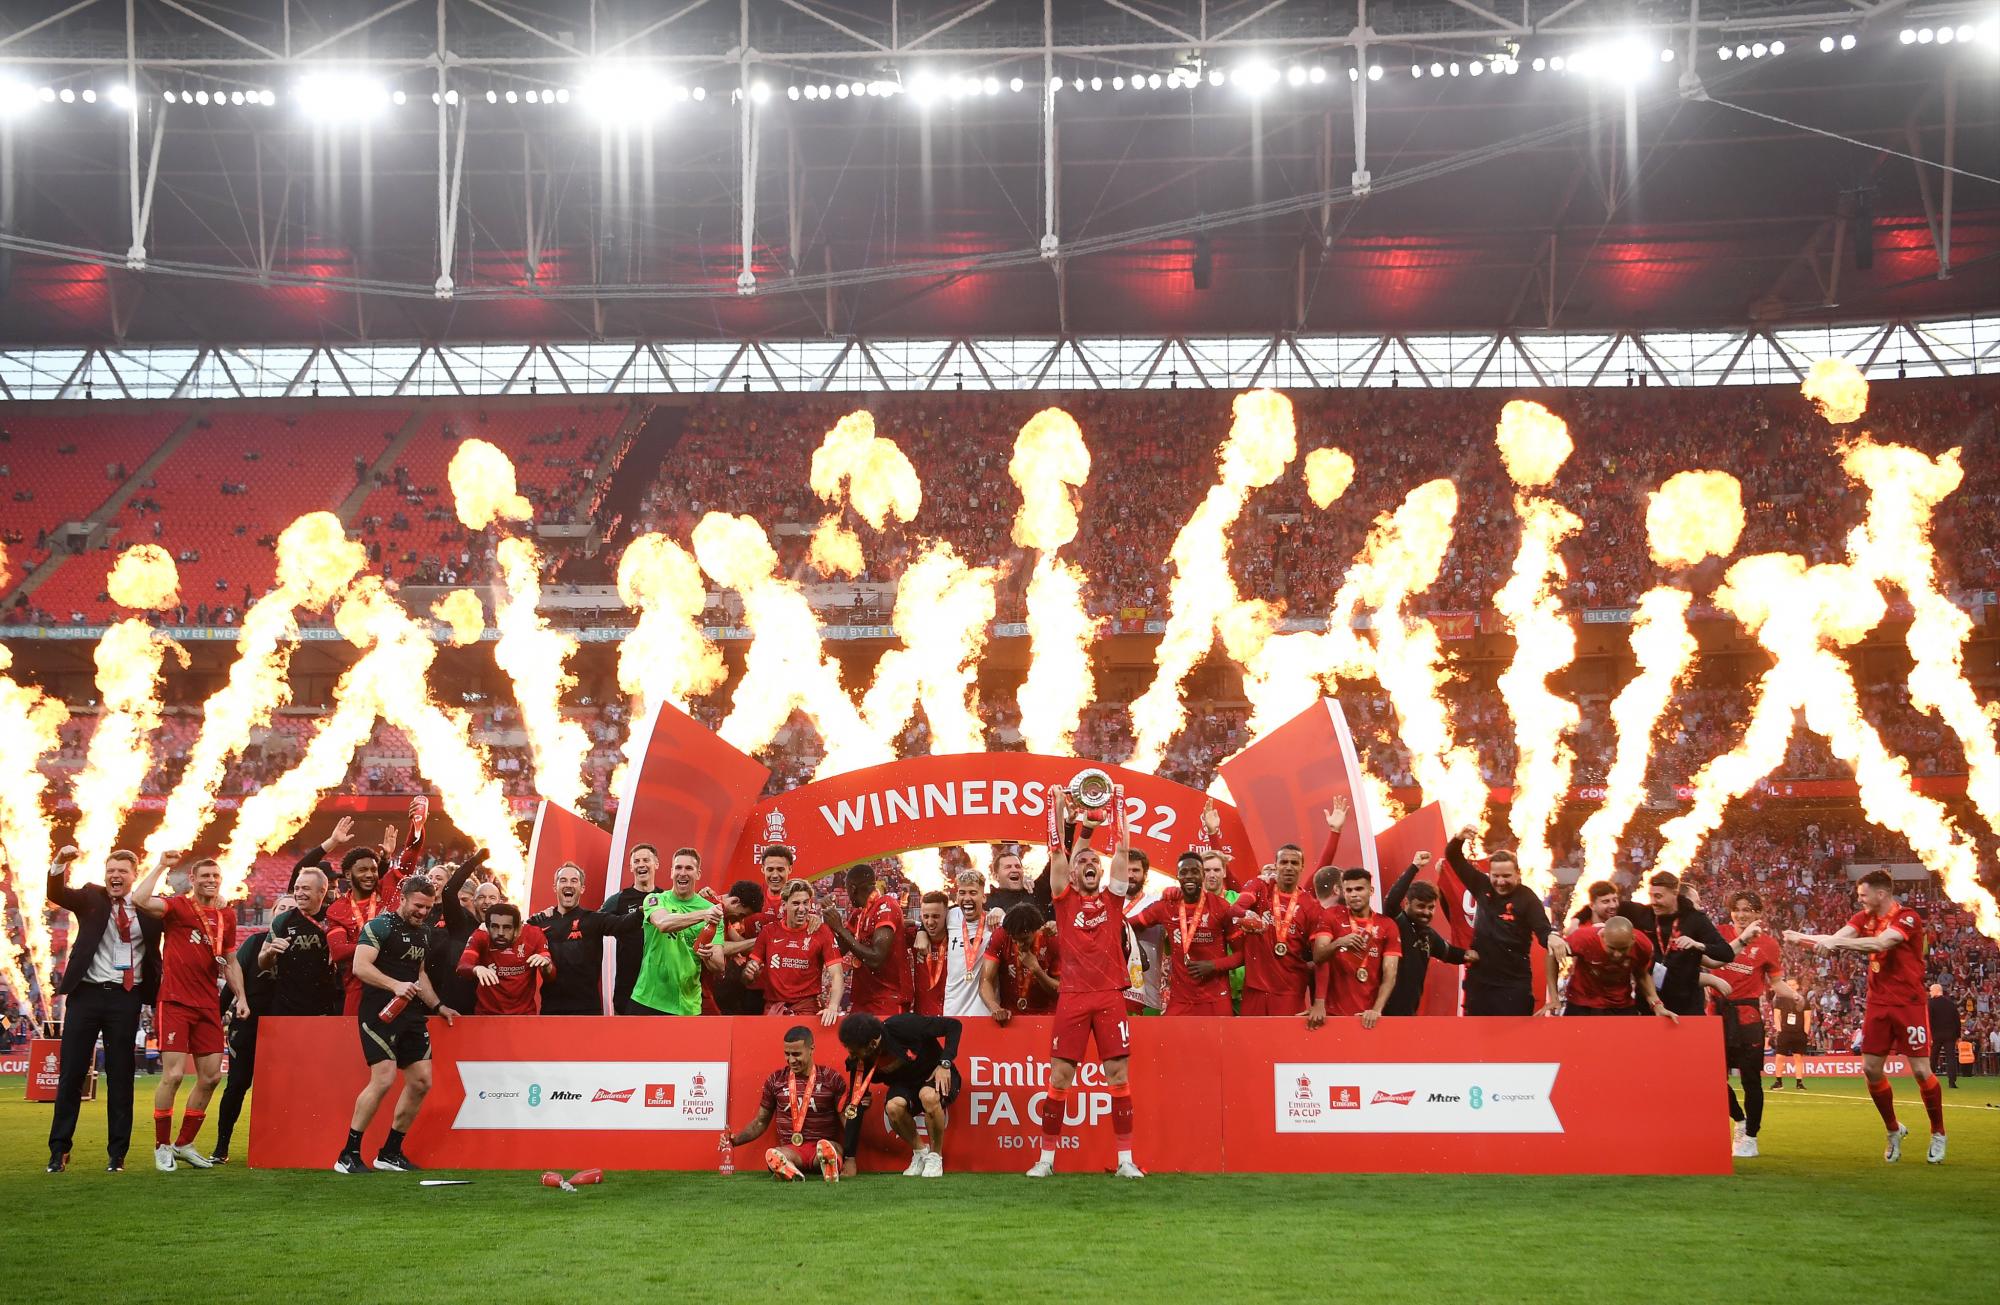 La plantilla del Liverpool festejó por todo lo alto la obtención de la FA Cup.